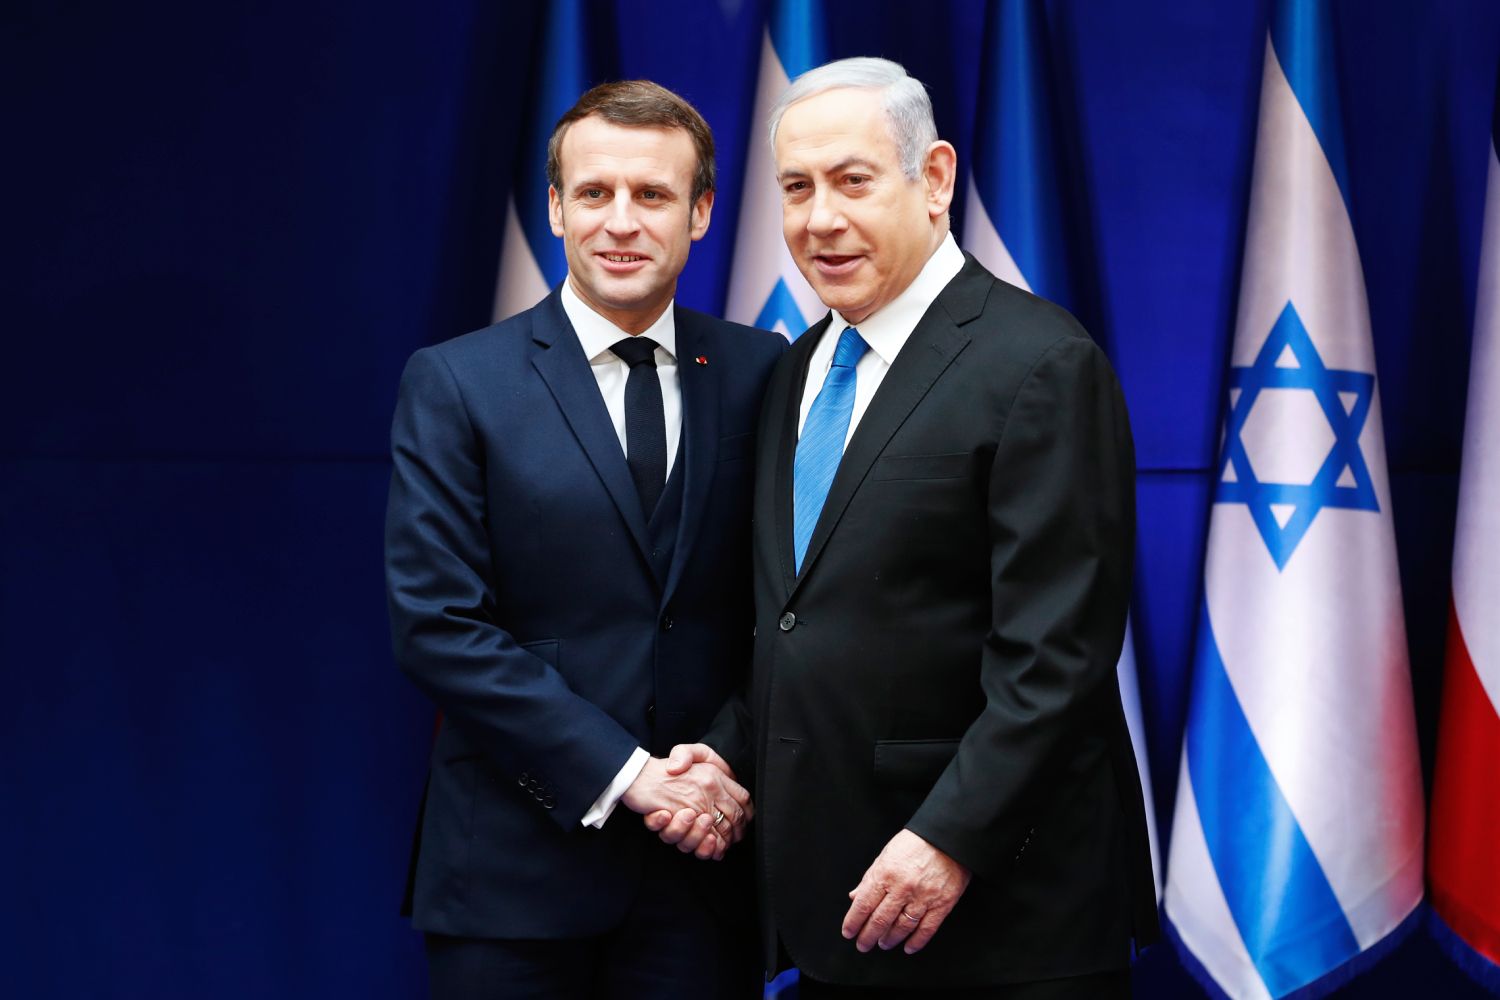 Συνάντηση Νετανιάχου – Μακρόν στο Παρίσι — Η επανέναρξη διαλόγου μεταξύ Παλαιστινίων & Ισραηλινών επί τάπητος